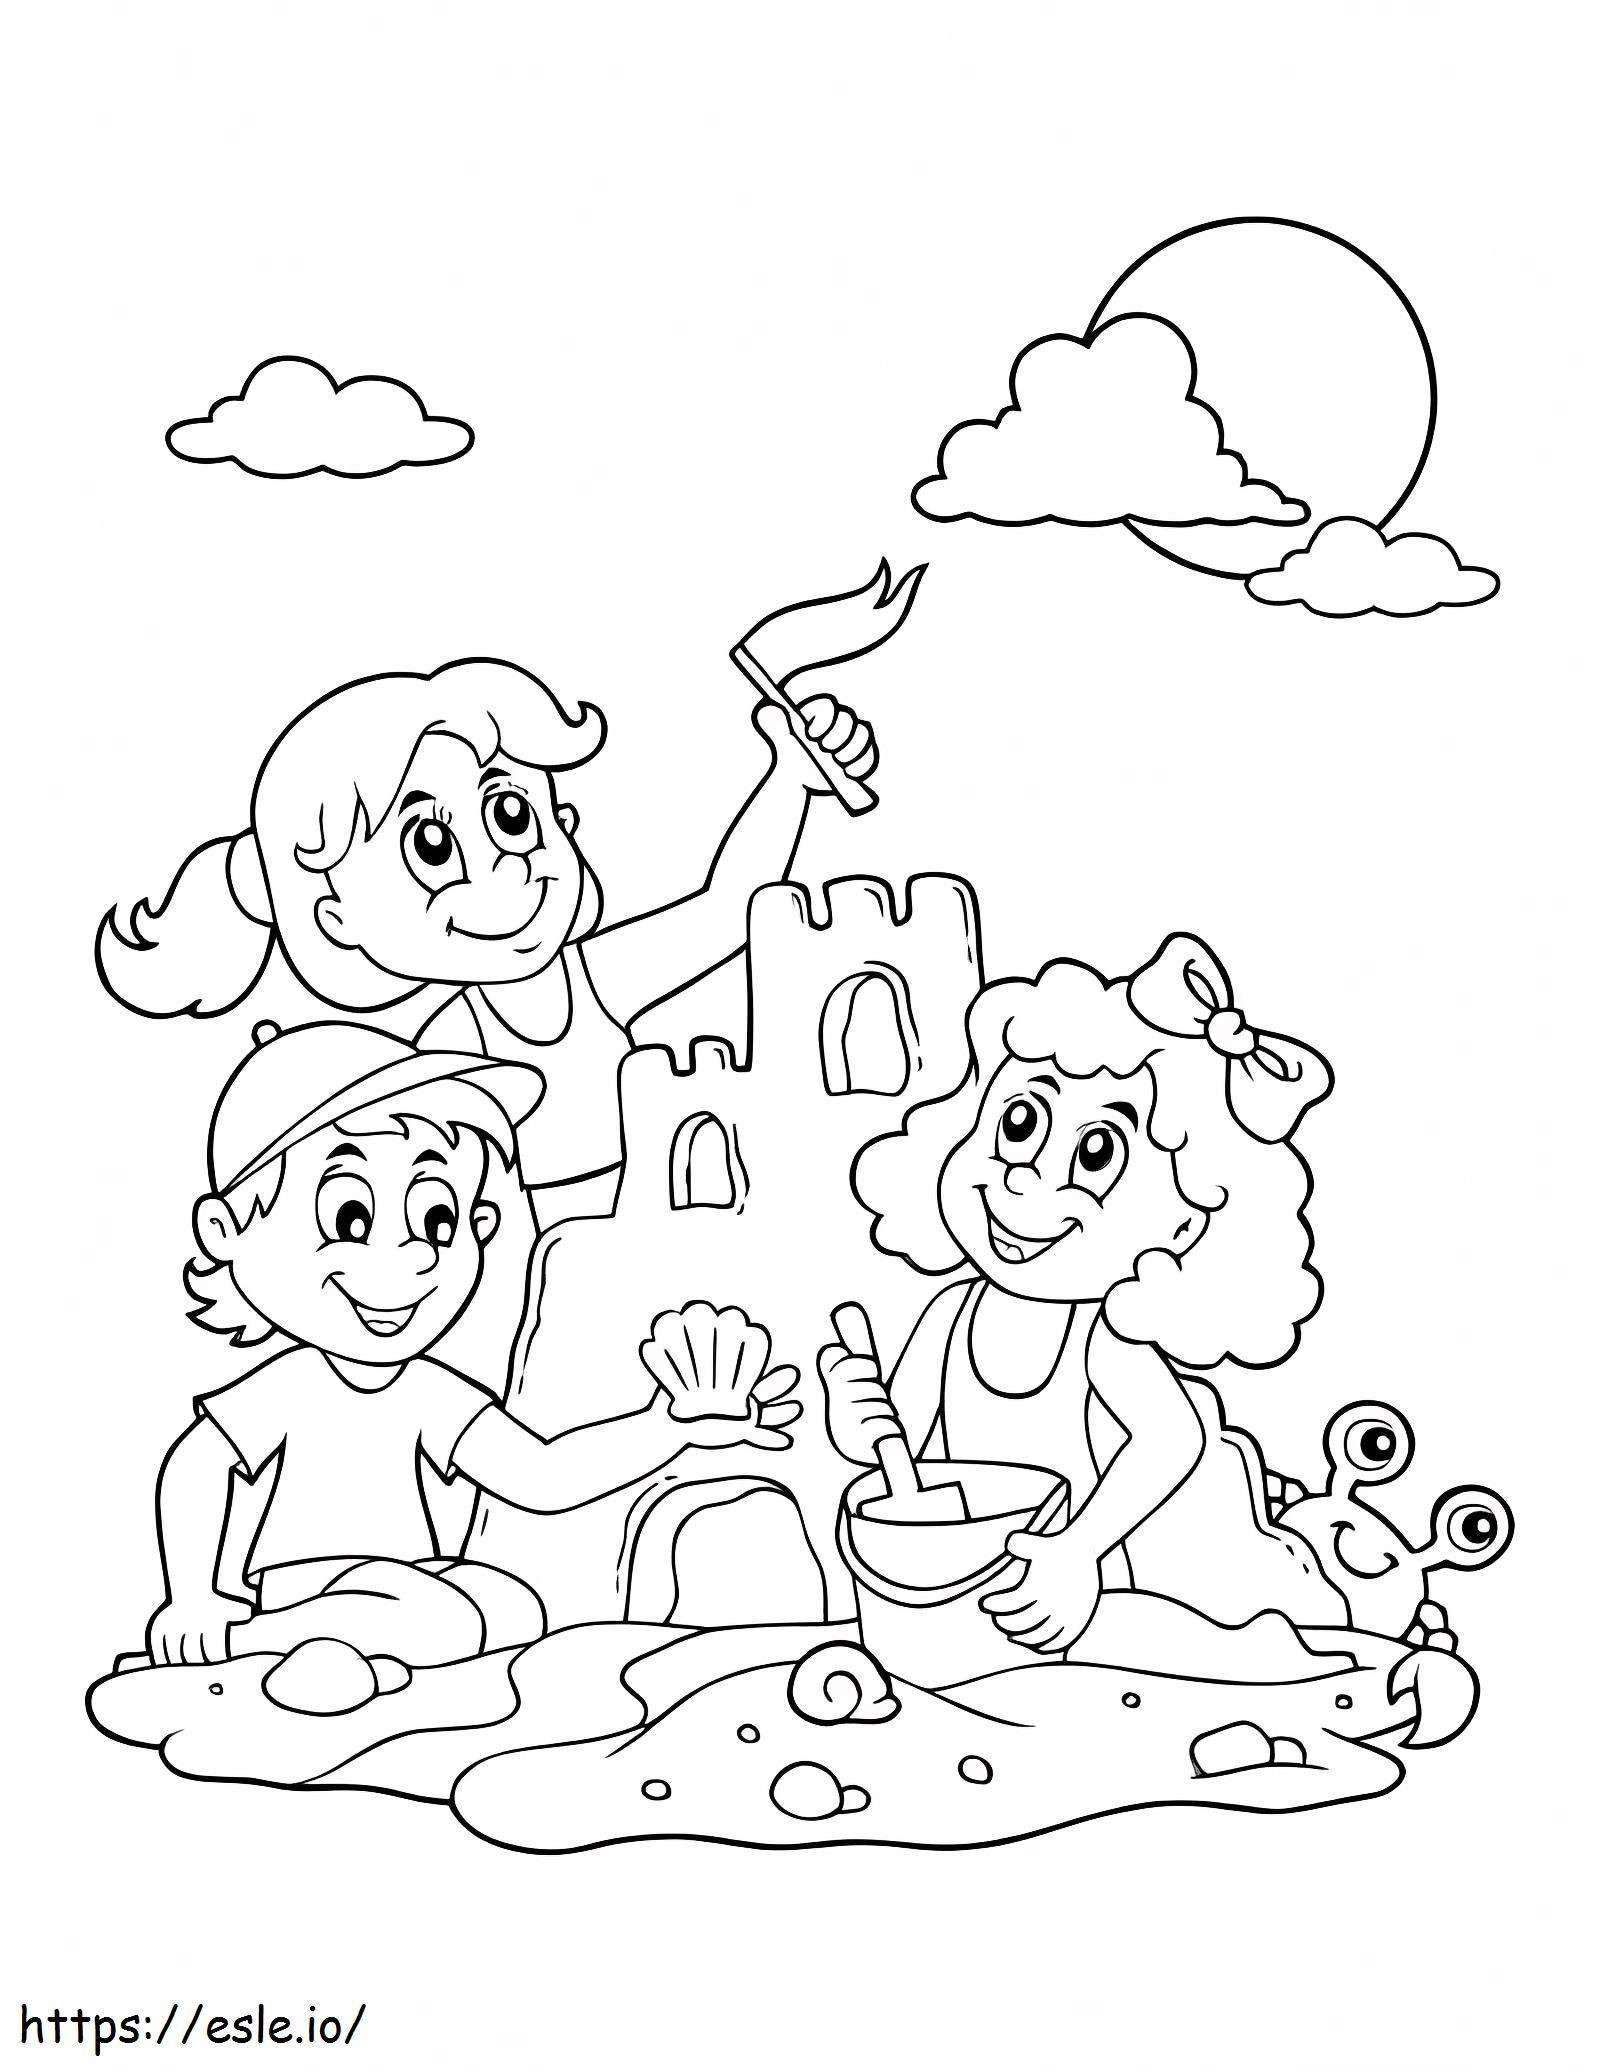 Tre bambini costruiscono castelli di sabbia da colorare